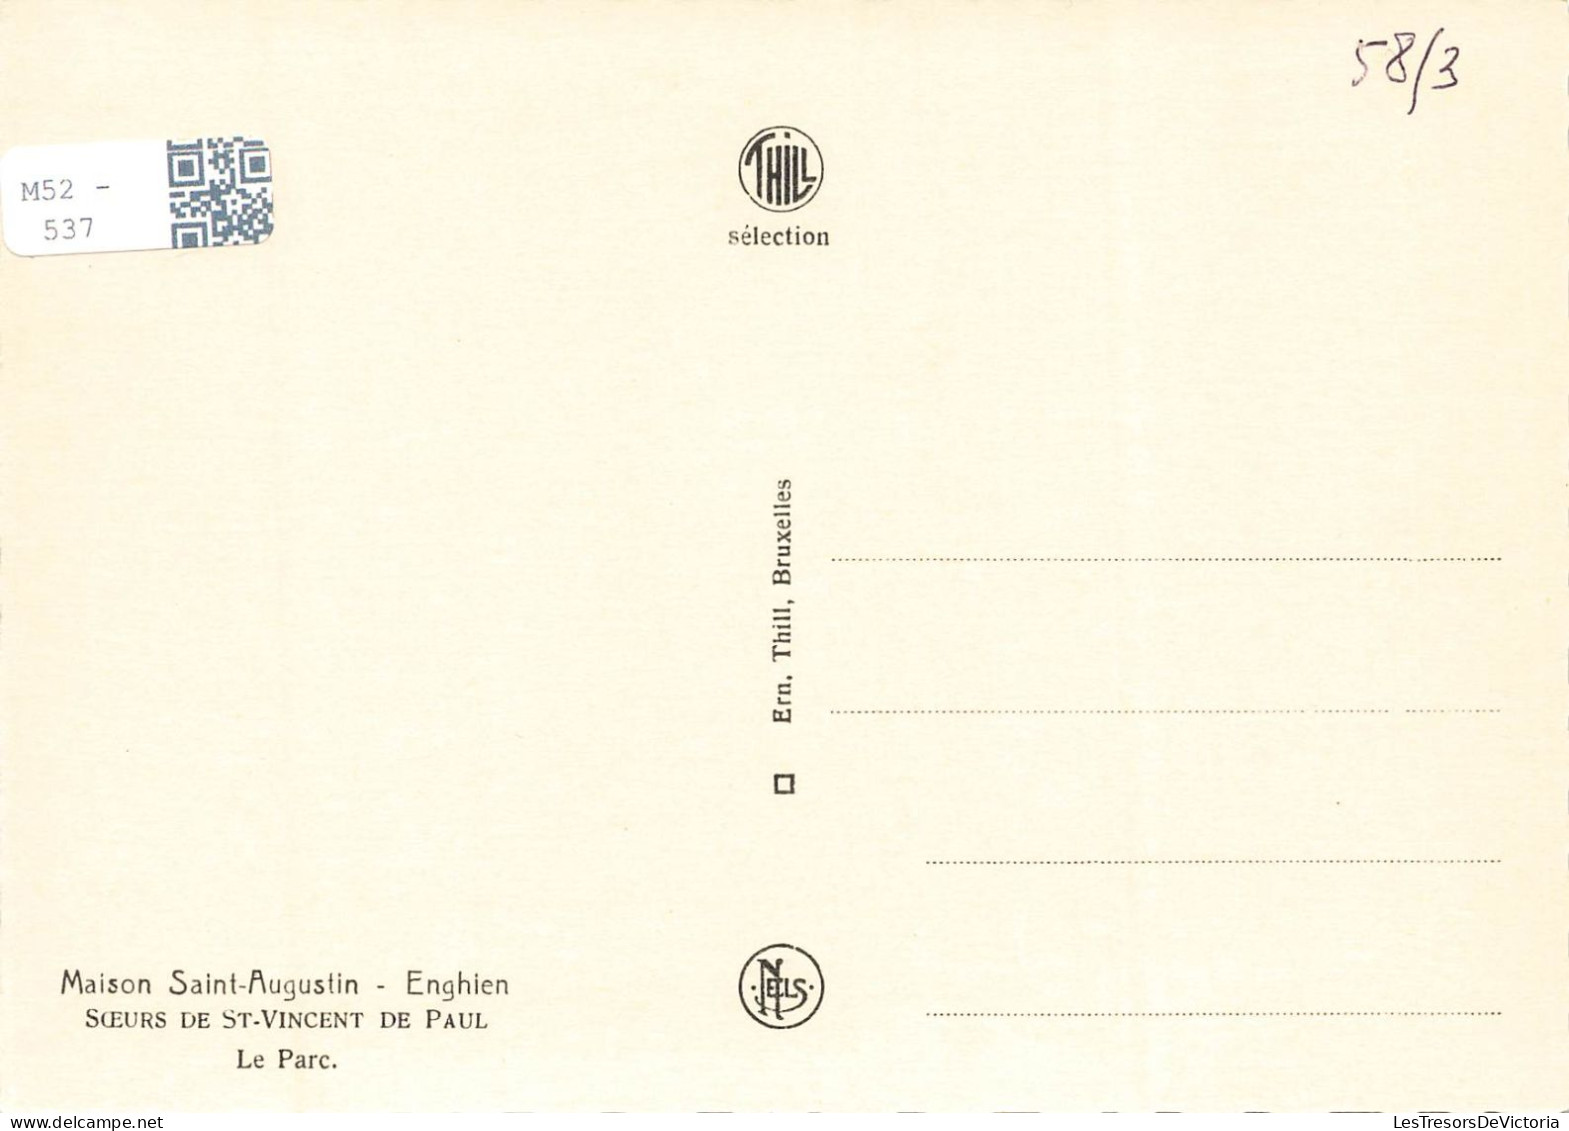 BELGIQUE - Enghien - Maison Saint Augustin - Le Parc - Carte Postale - Edingen